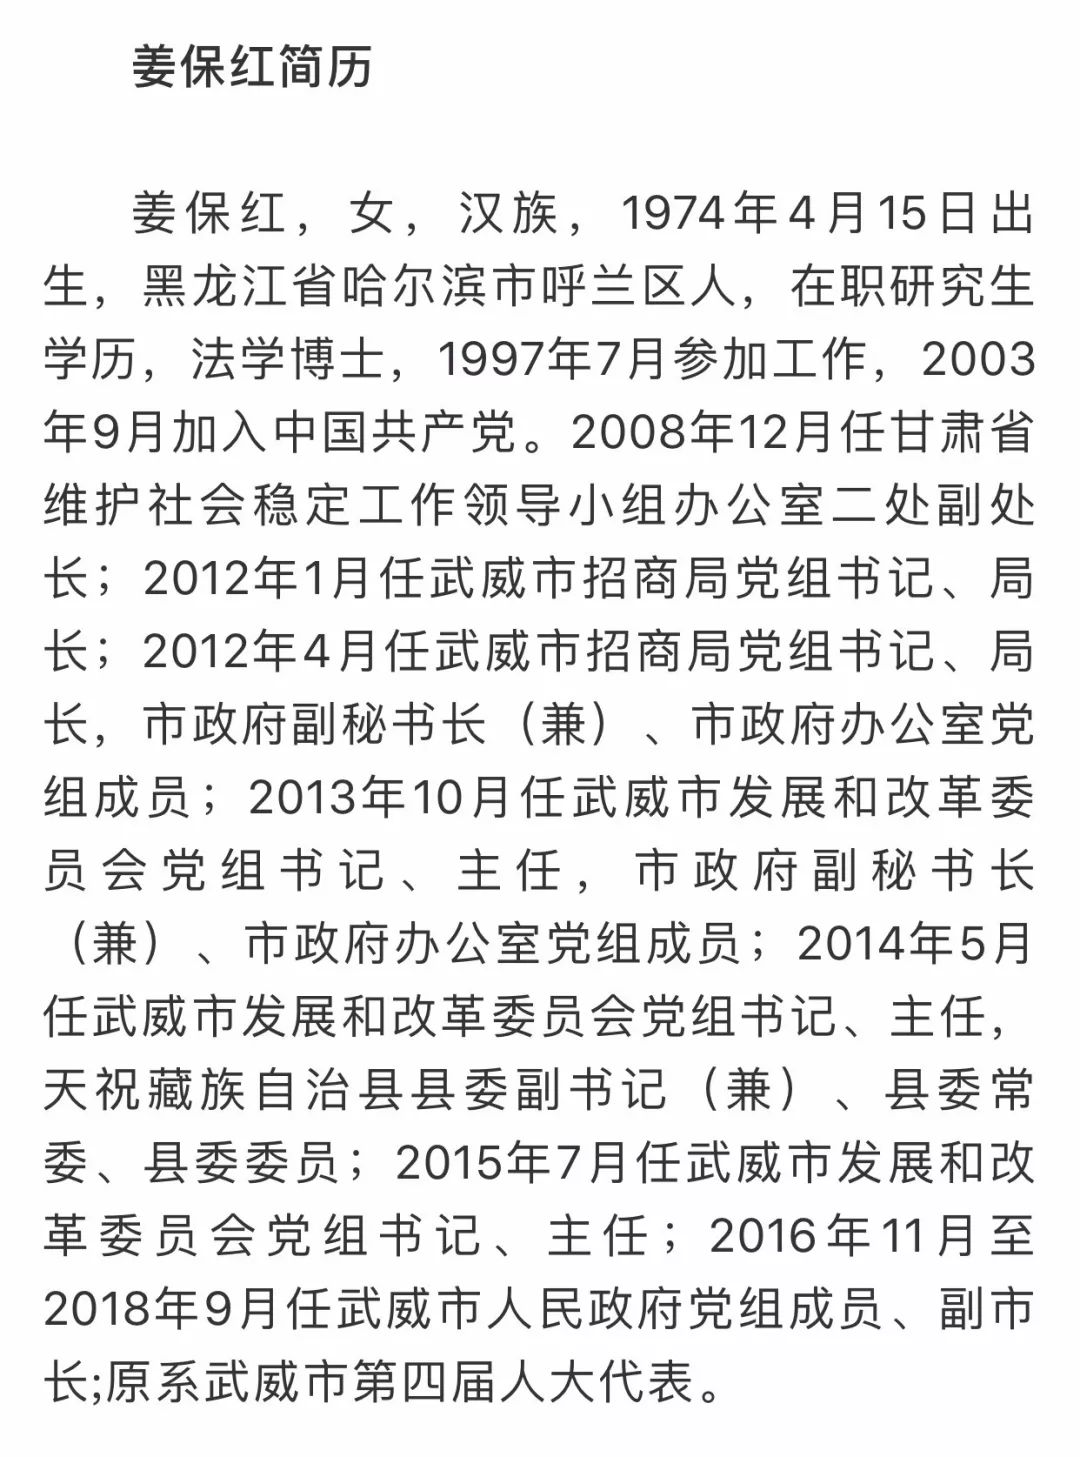 甘肃省武威市原副市长姜保红被开除党籍和公职